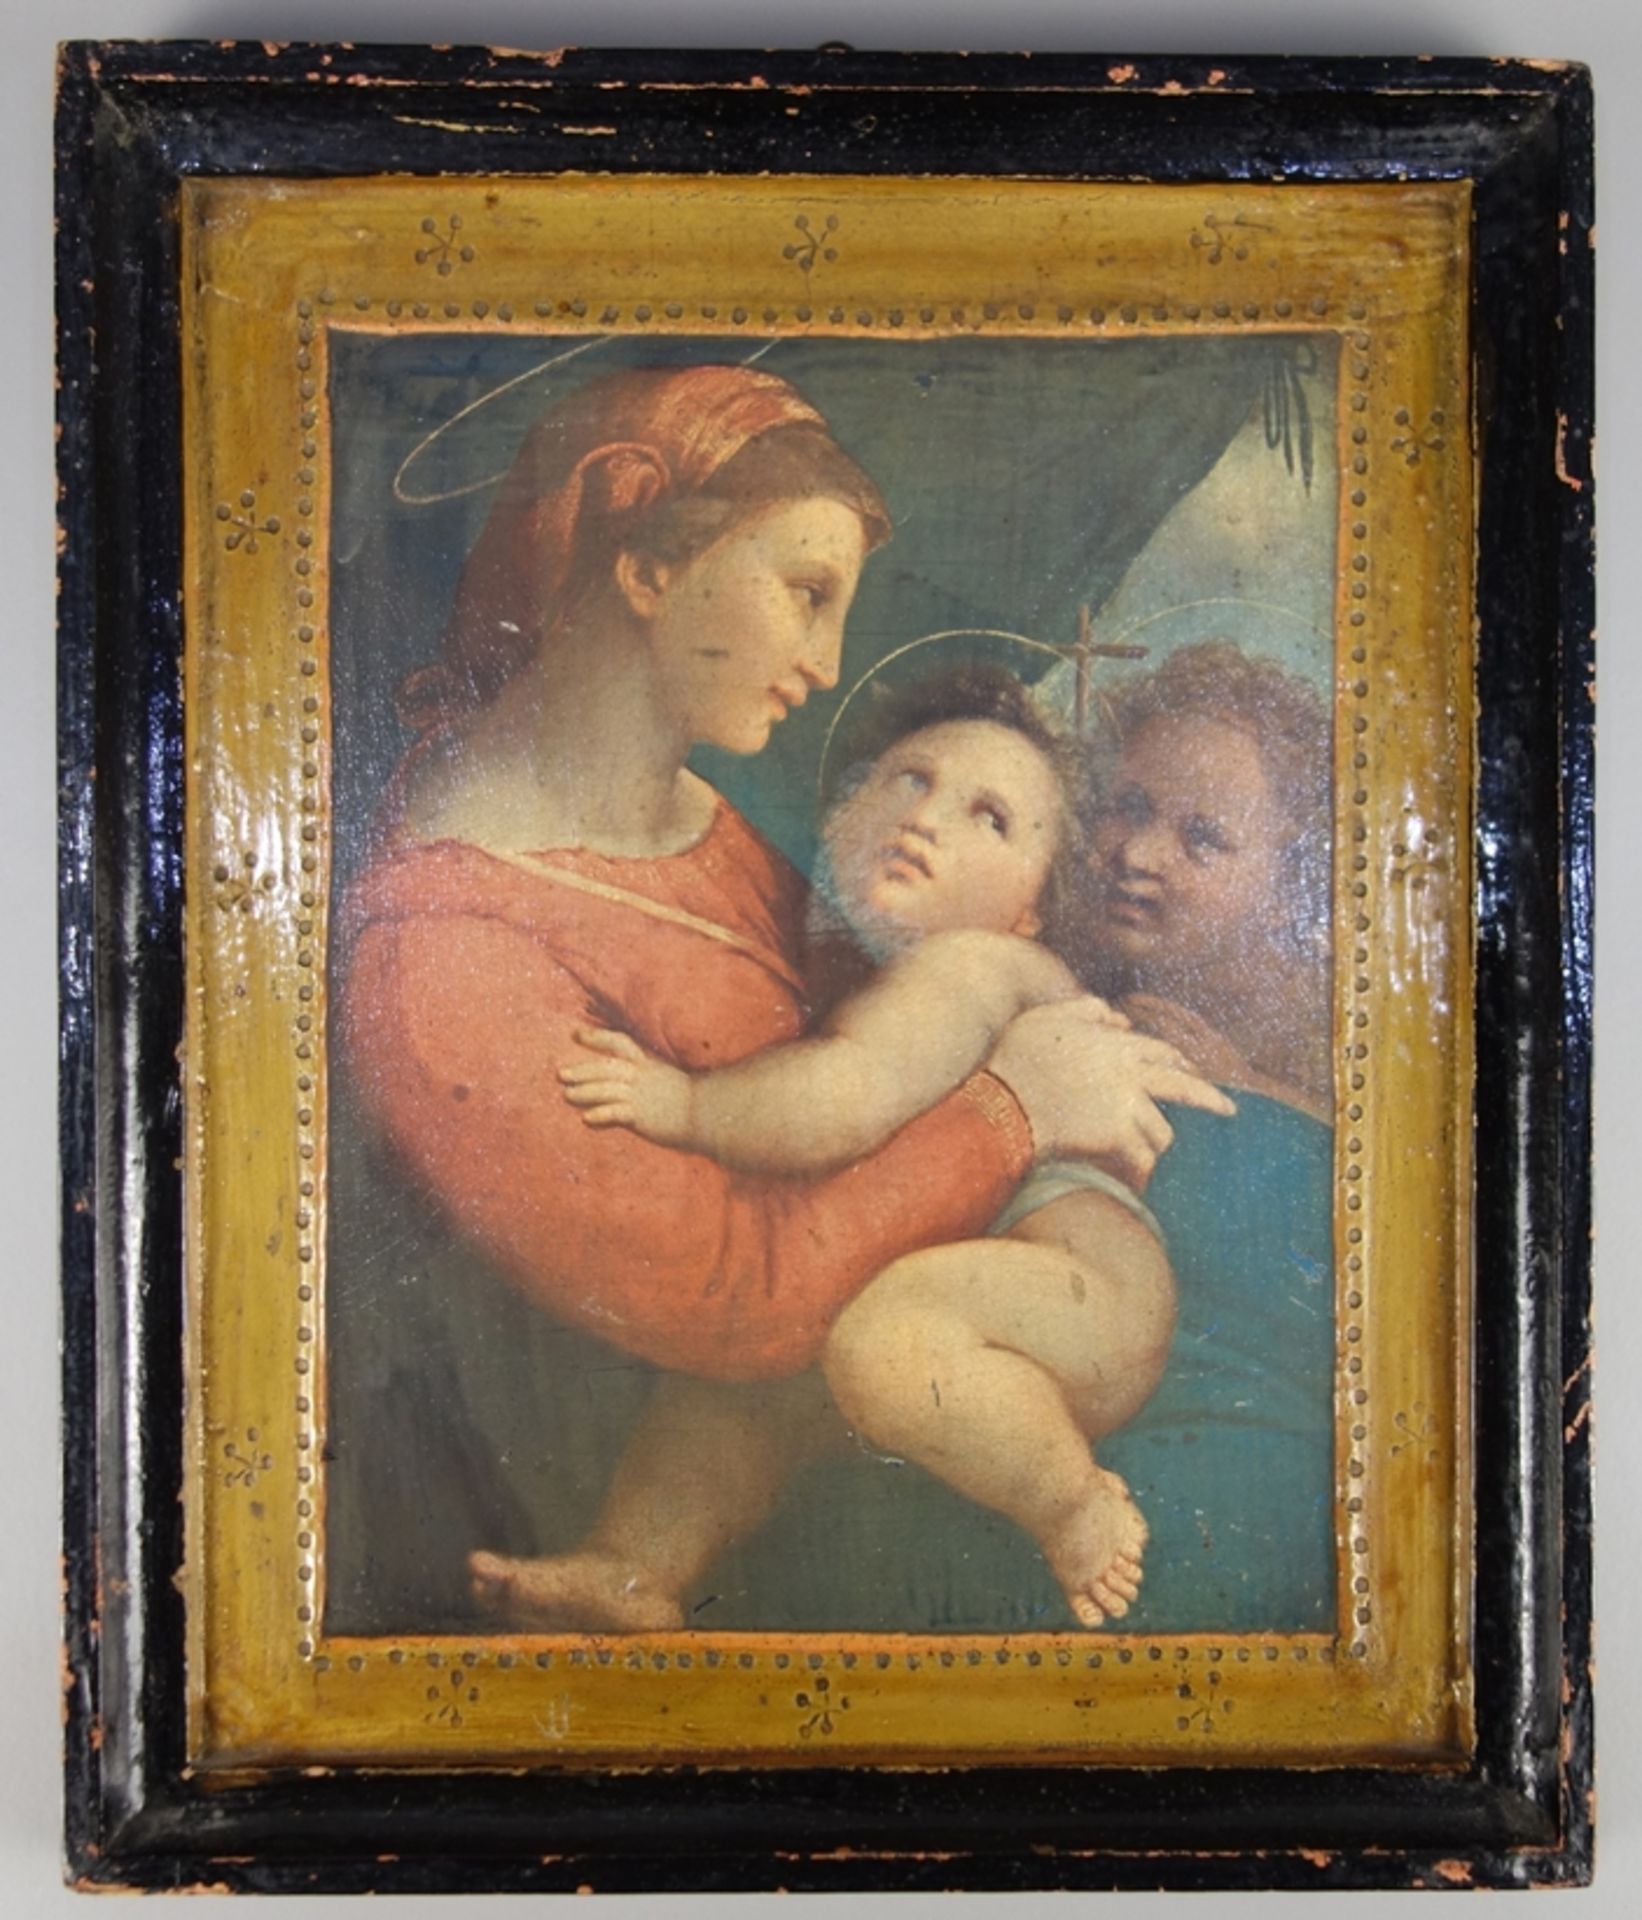 Kunstdruck nach Raffael "Madonna della Tenda", 2. Hälfte 20. Jahrhundert, in an